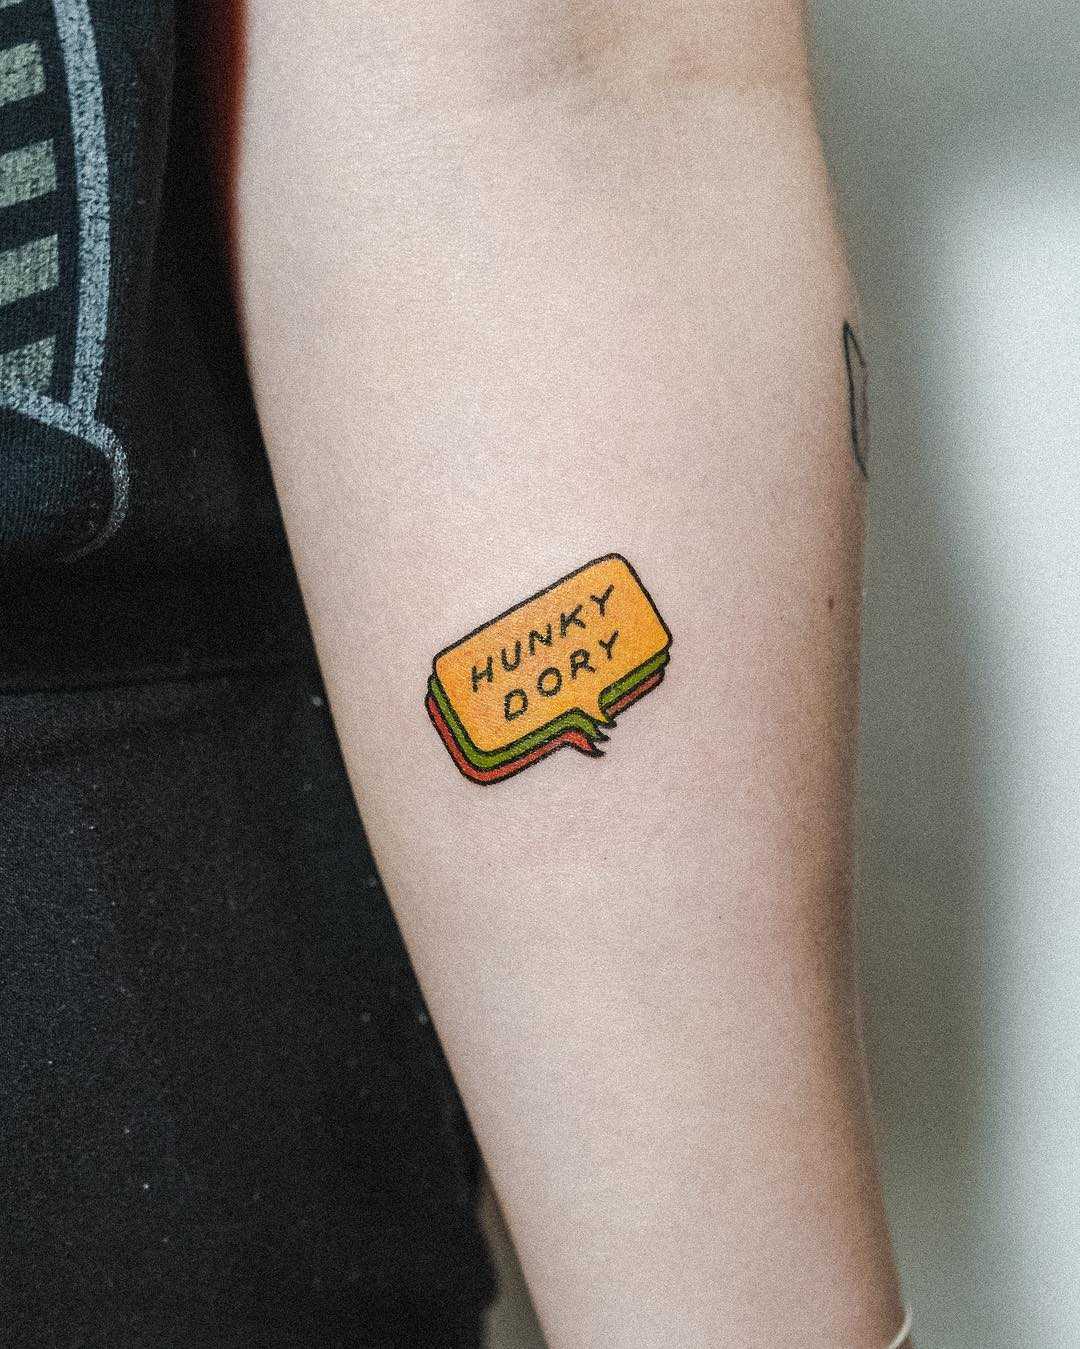 Hunky dory tattoo by tattooist Bongkee